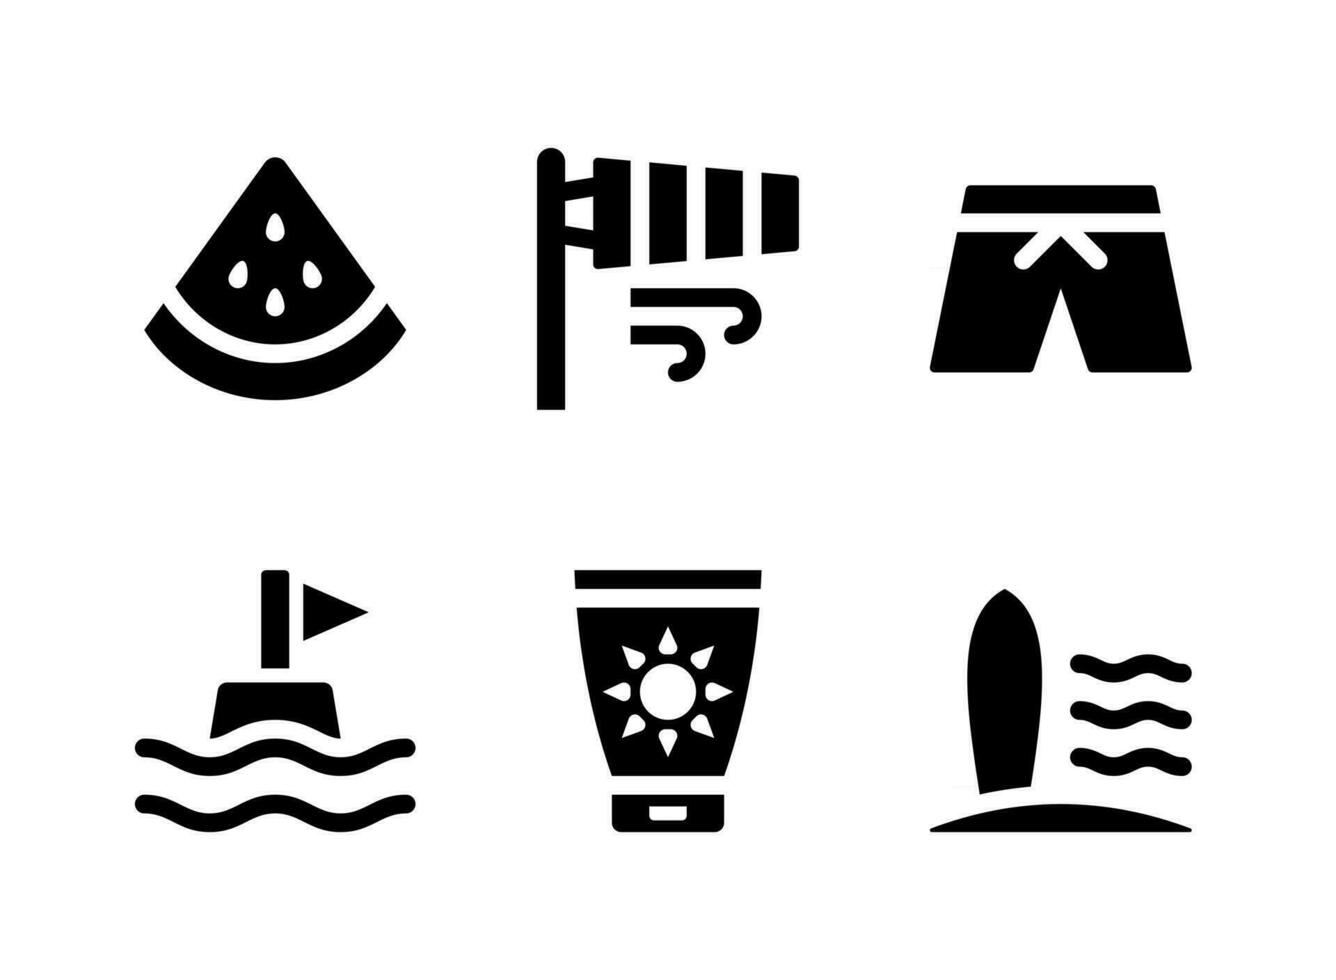 conjunto simples de ícones sólidos vetoriais relacionados ao surf vetor